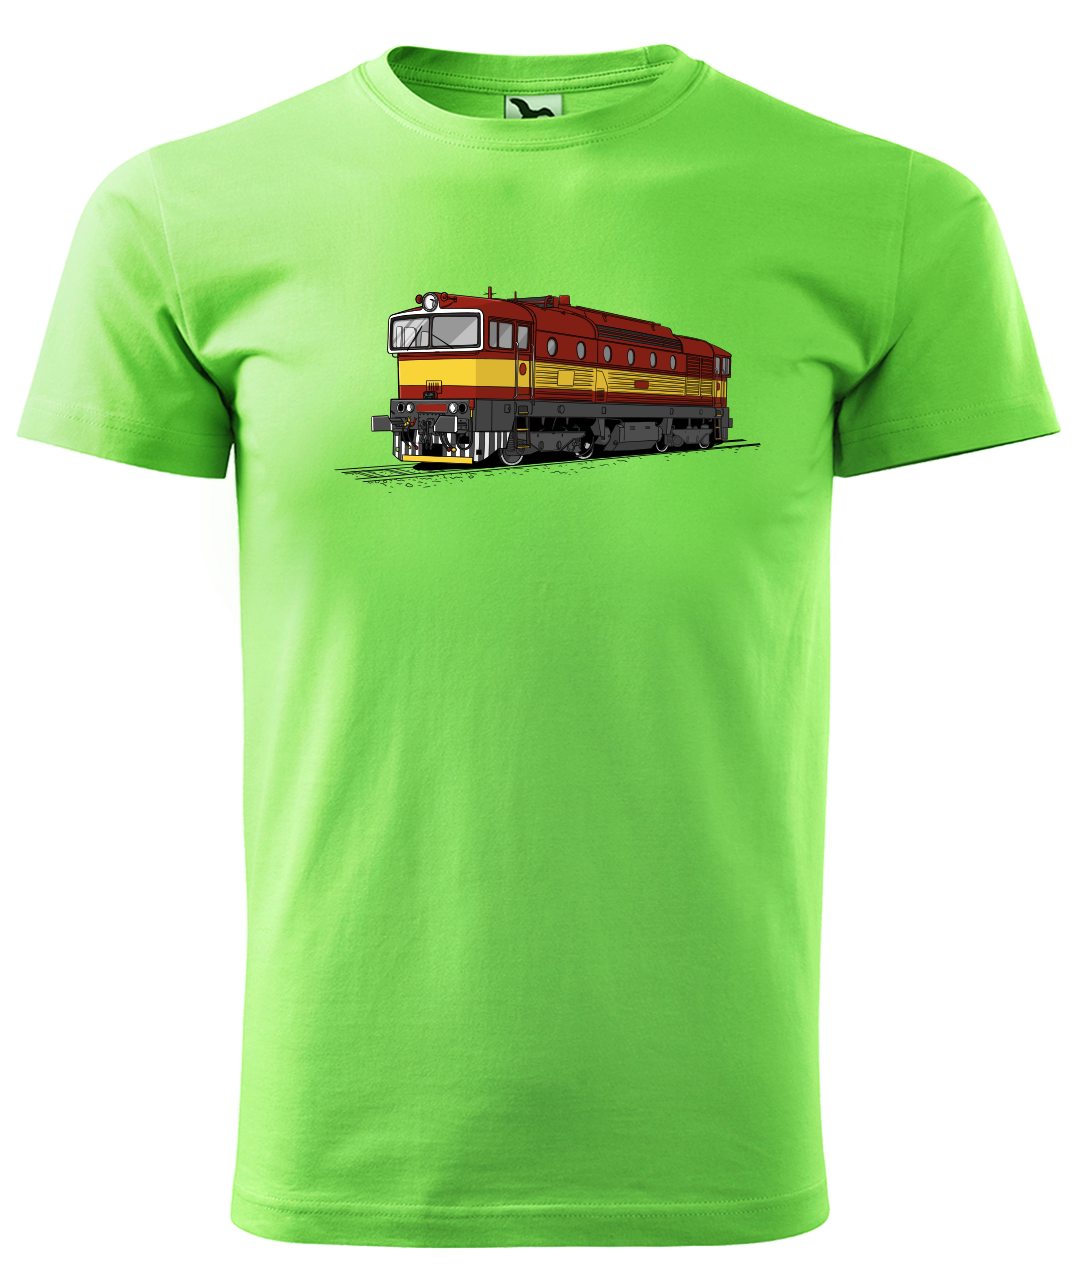 Dětské tričko s vlakem - Barevná lokomotiva BREJLOVEC Velikost: 4 roky / 110 cm, Barva: Apple Green (92)